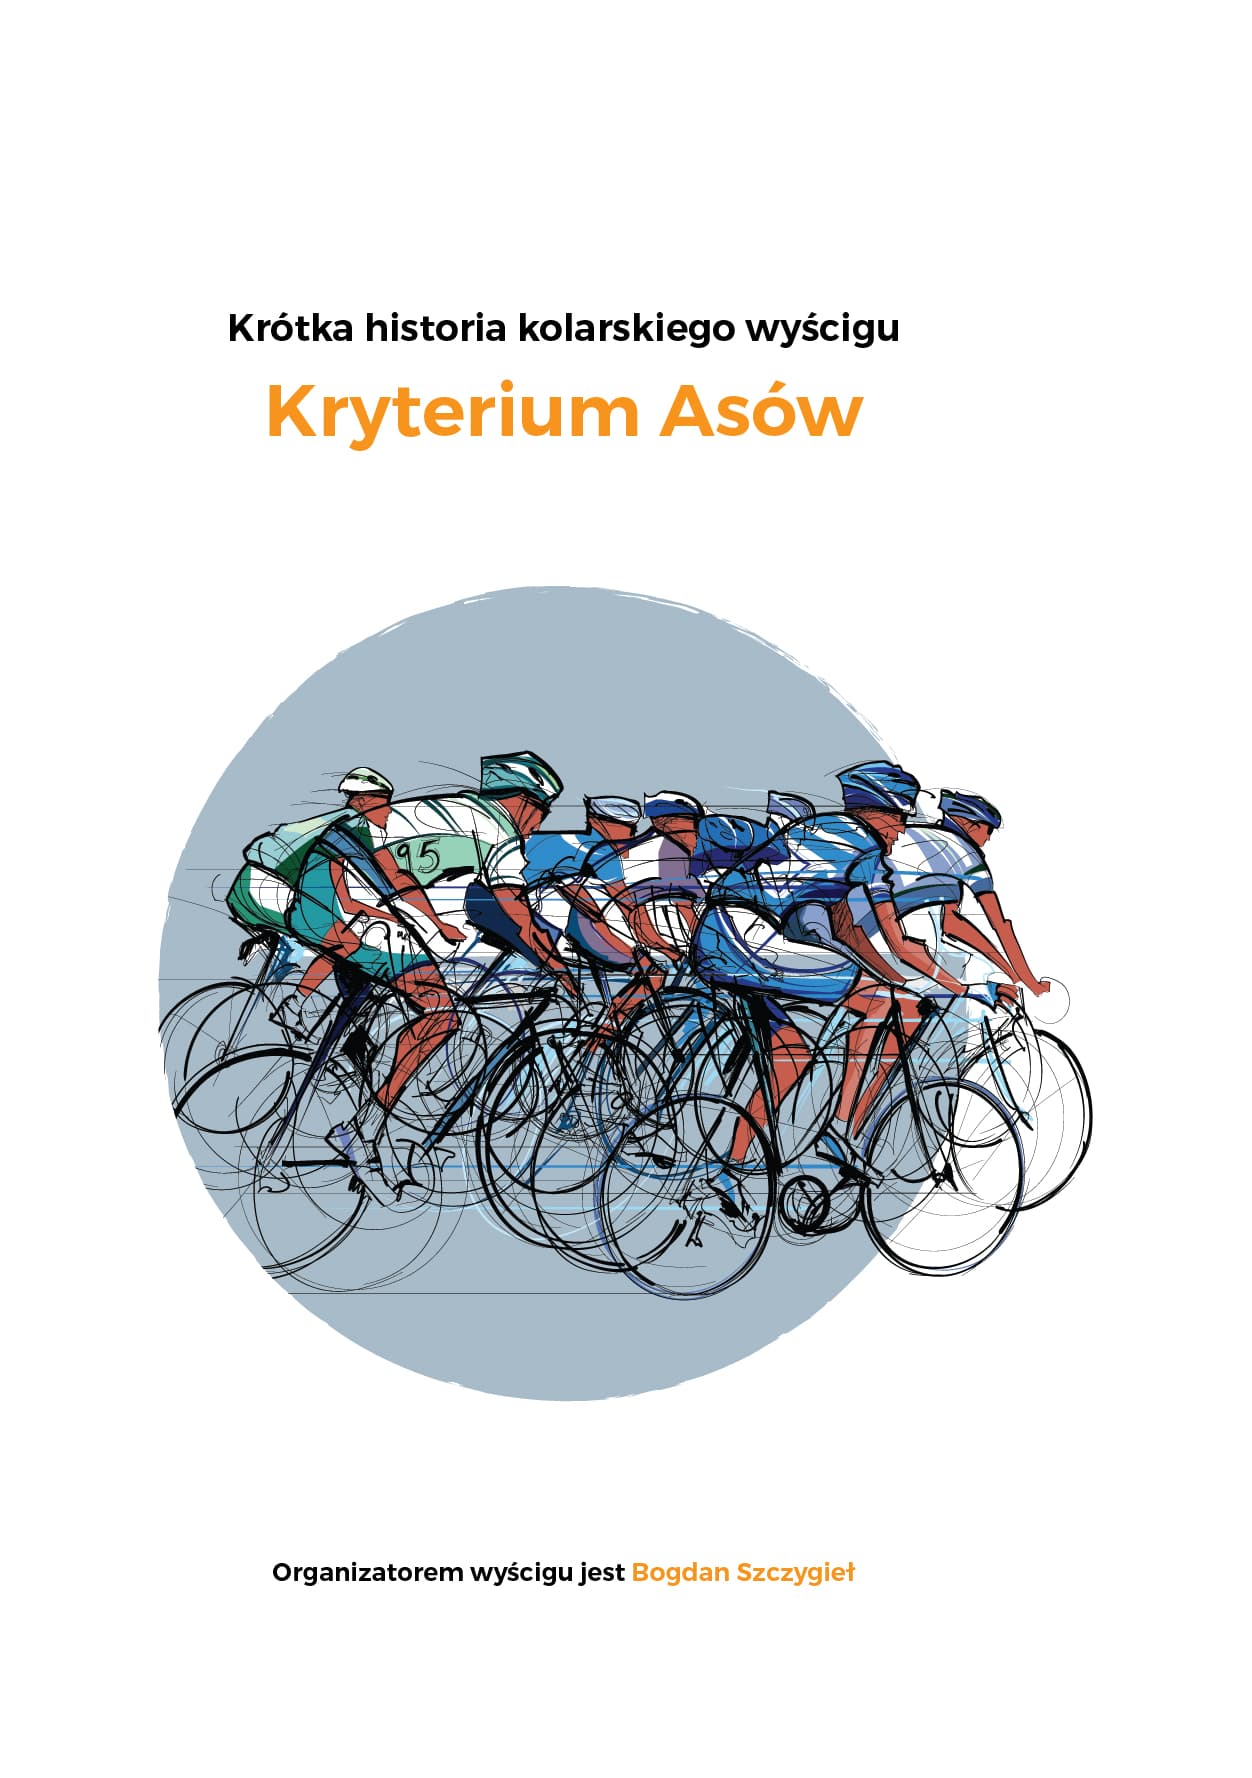 Kryterium Asów 2022. Międzynarodowy wyścig kolarski.  Program i zapowiedź.